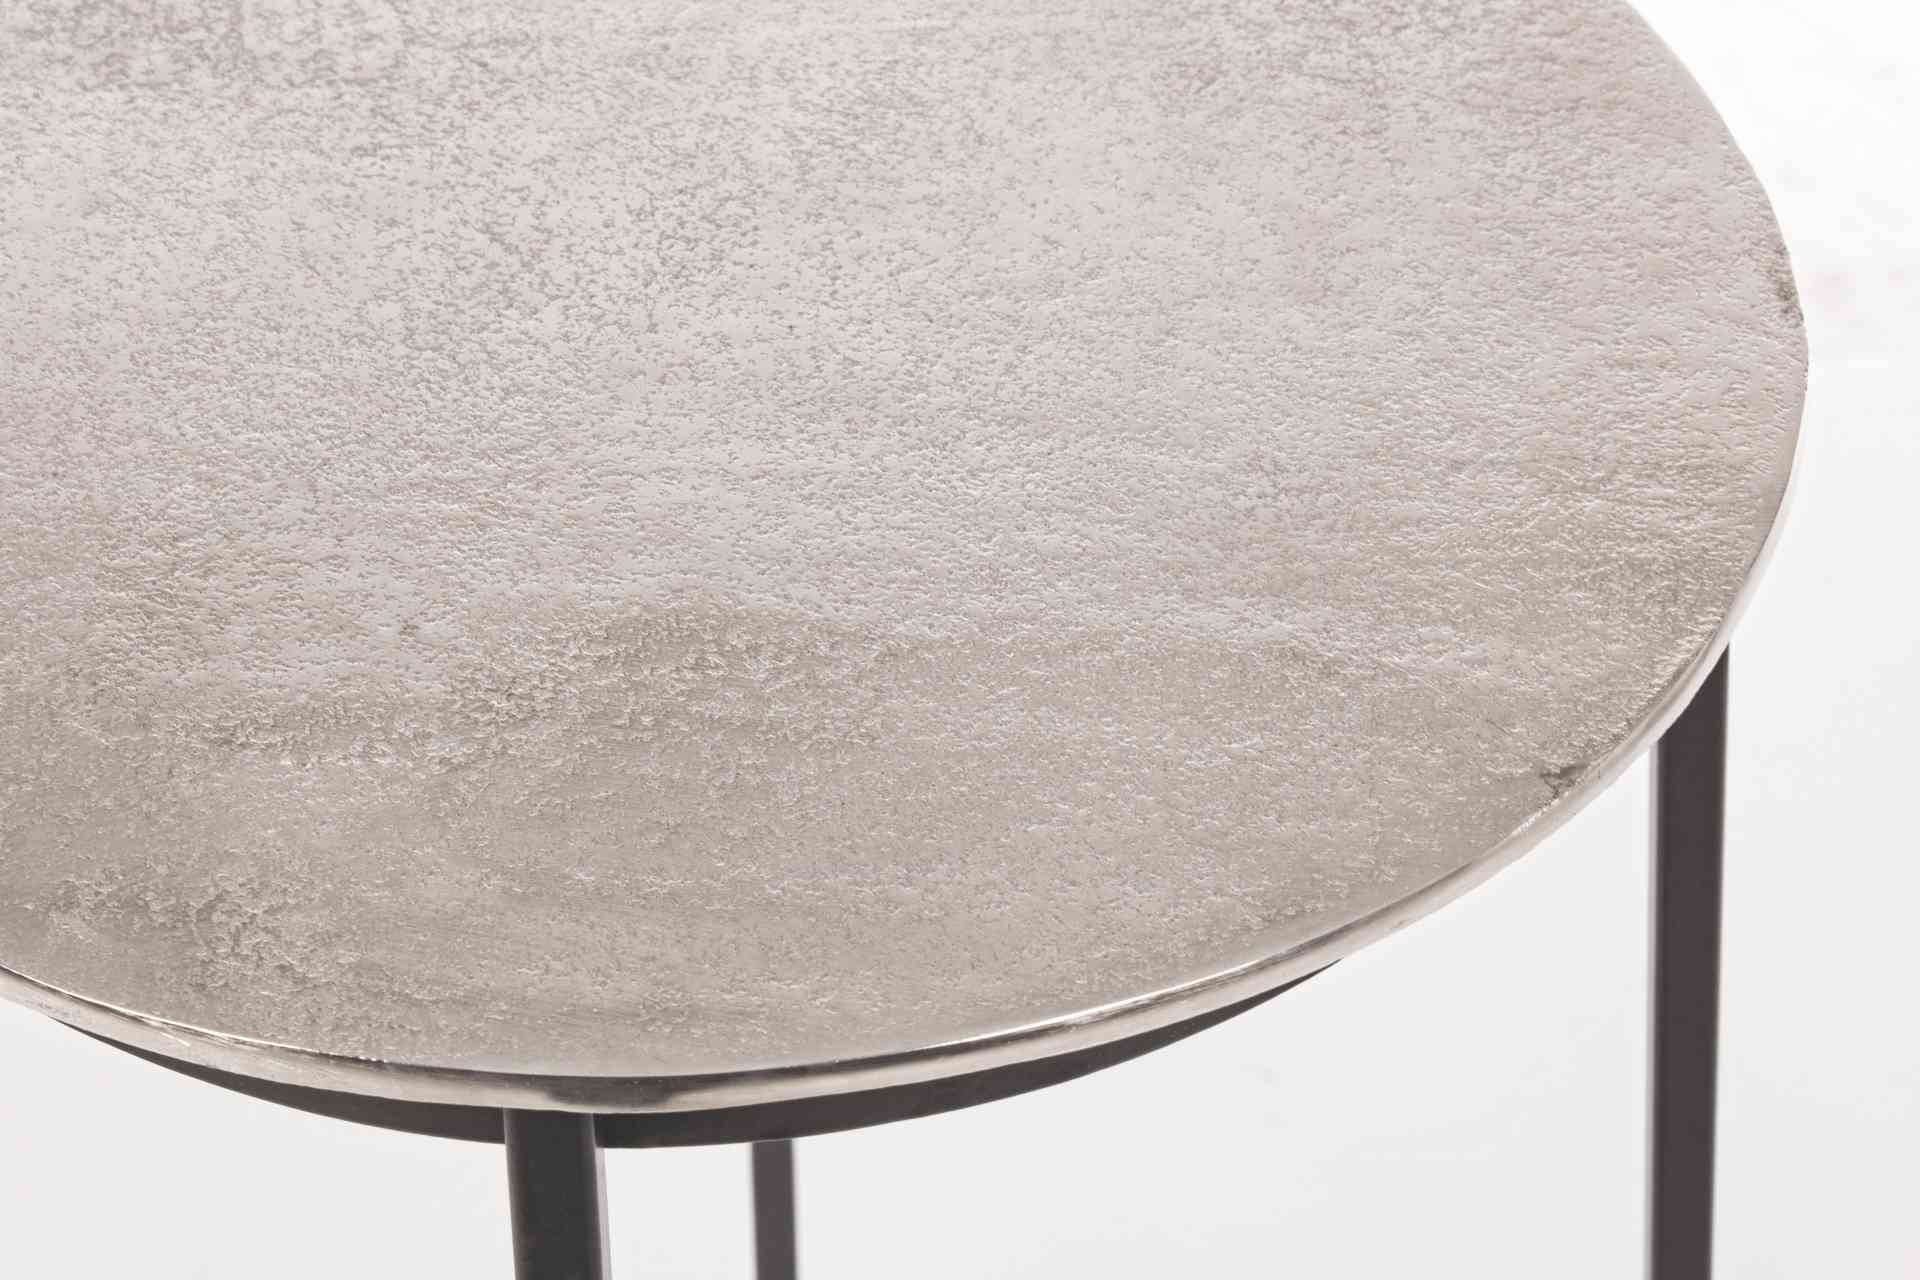 Der Barhocker Amira überzeugt mit seinem moderndem Design. Gefertigt wurde er aus Aluminium, welches einen silbernen Farbton besitzt. Das Gestell ist aus Metall und hat eine schwarze Farbe. Die Sitzhöhe des Hockers beträgt 77 cm.